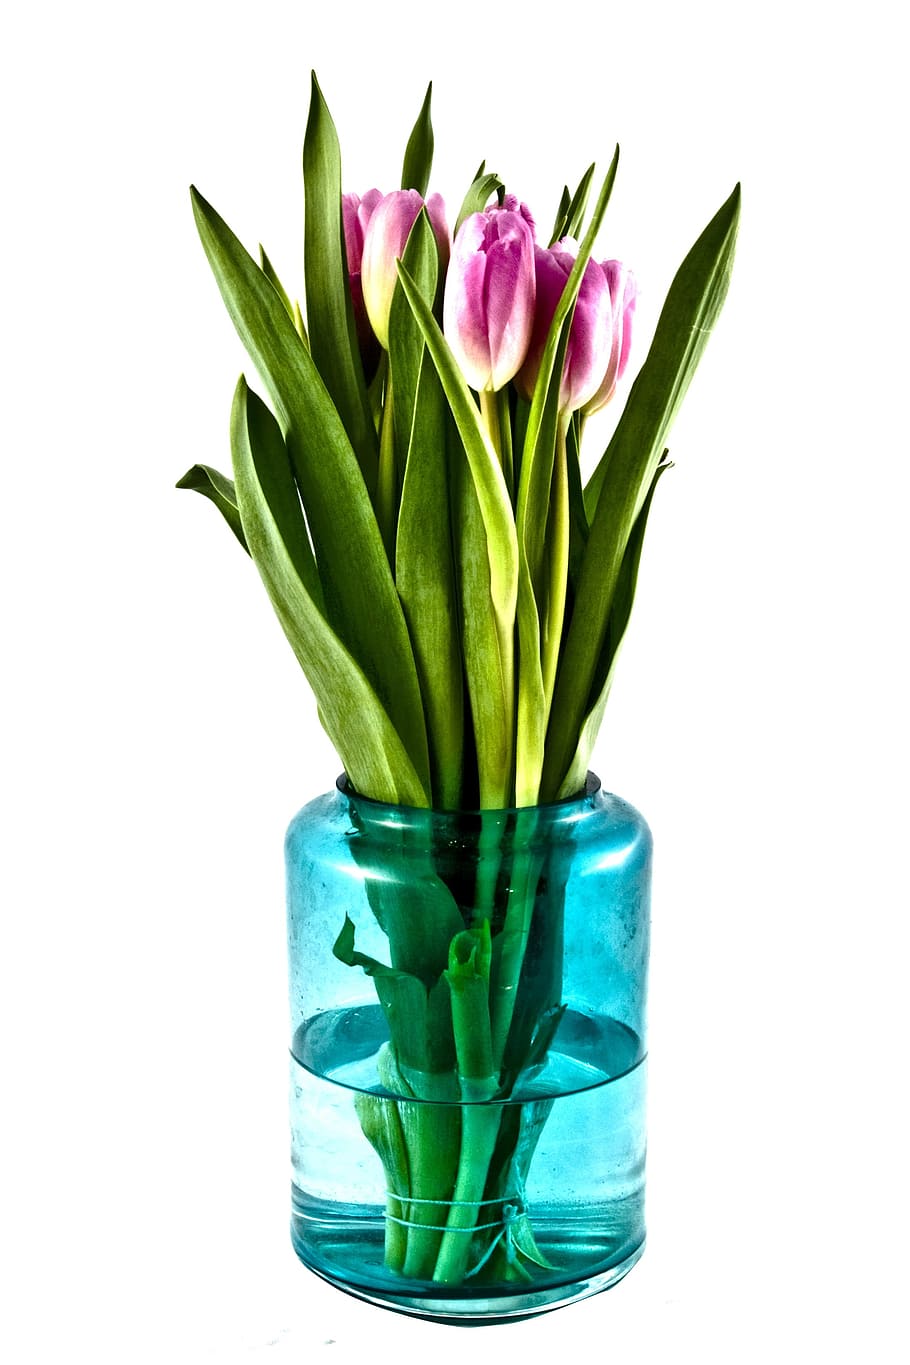 planta floreciendo, florero de vidrio, tulipanes, ramo, flores, florero, planta, tulipán, flor, color verde